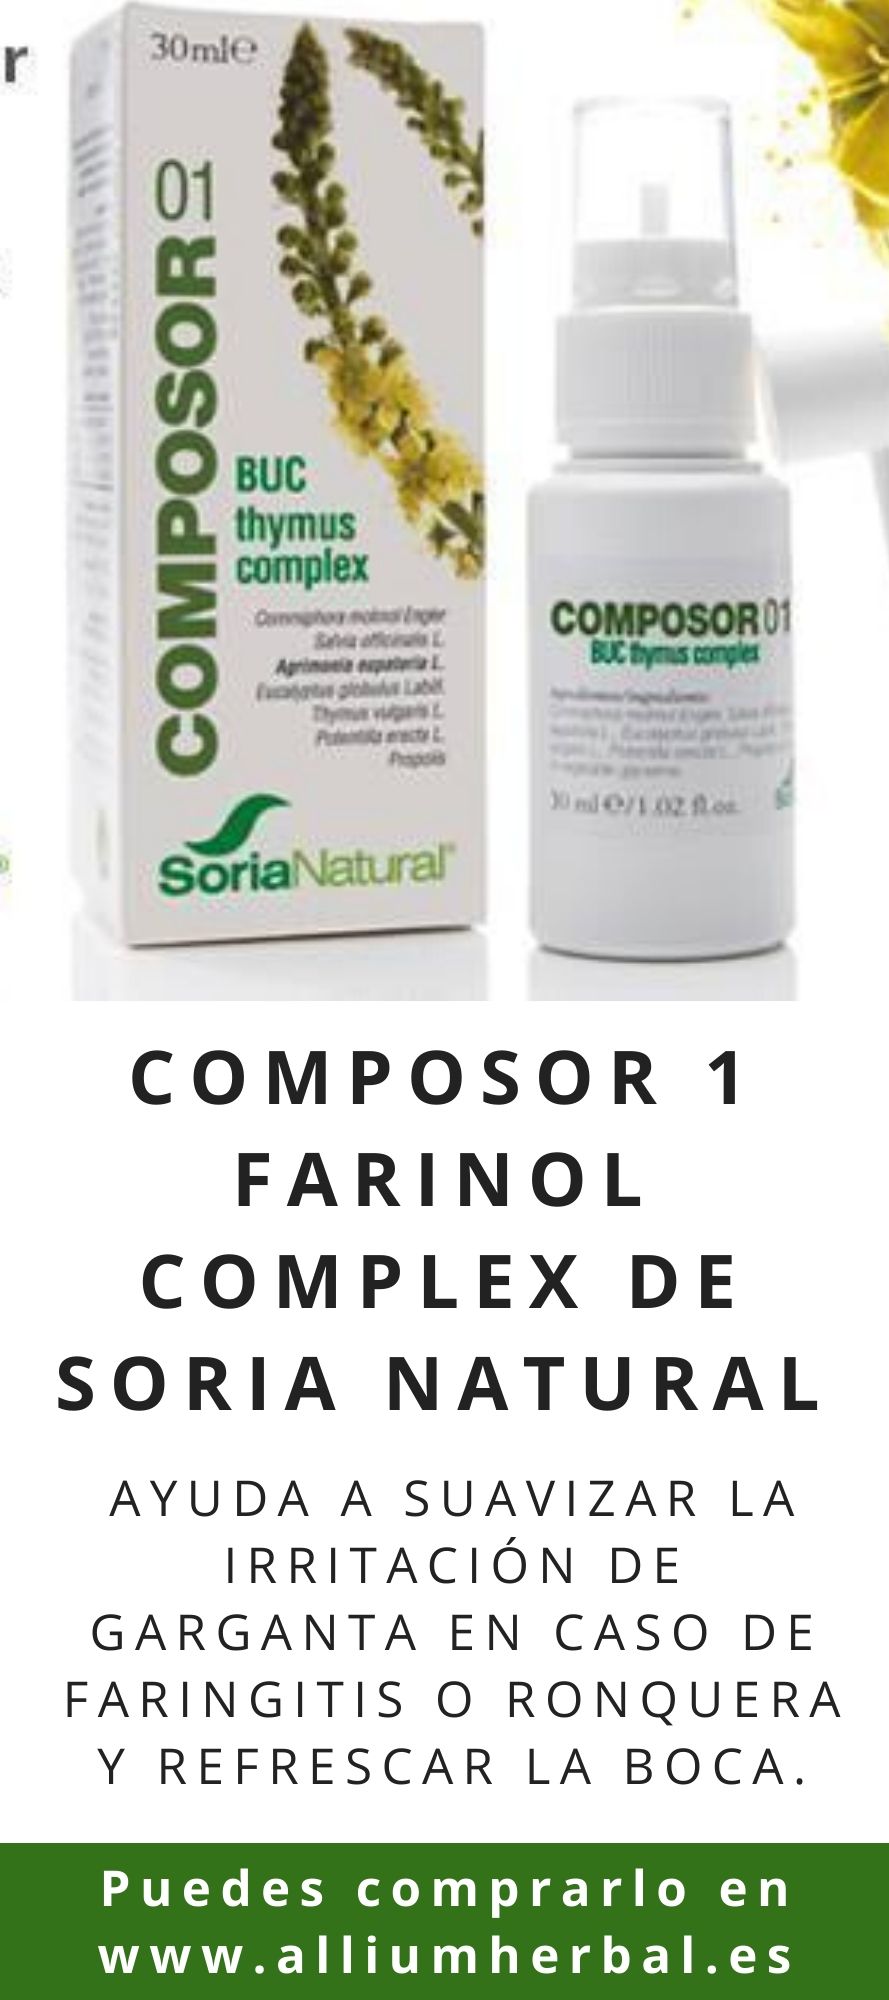 Composor farinol complex de Soria Natural